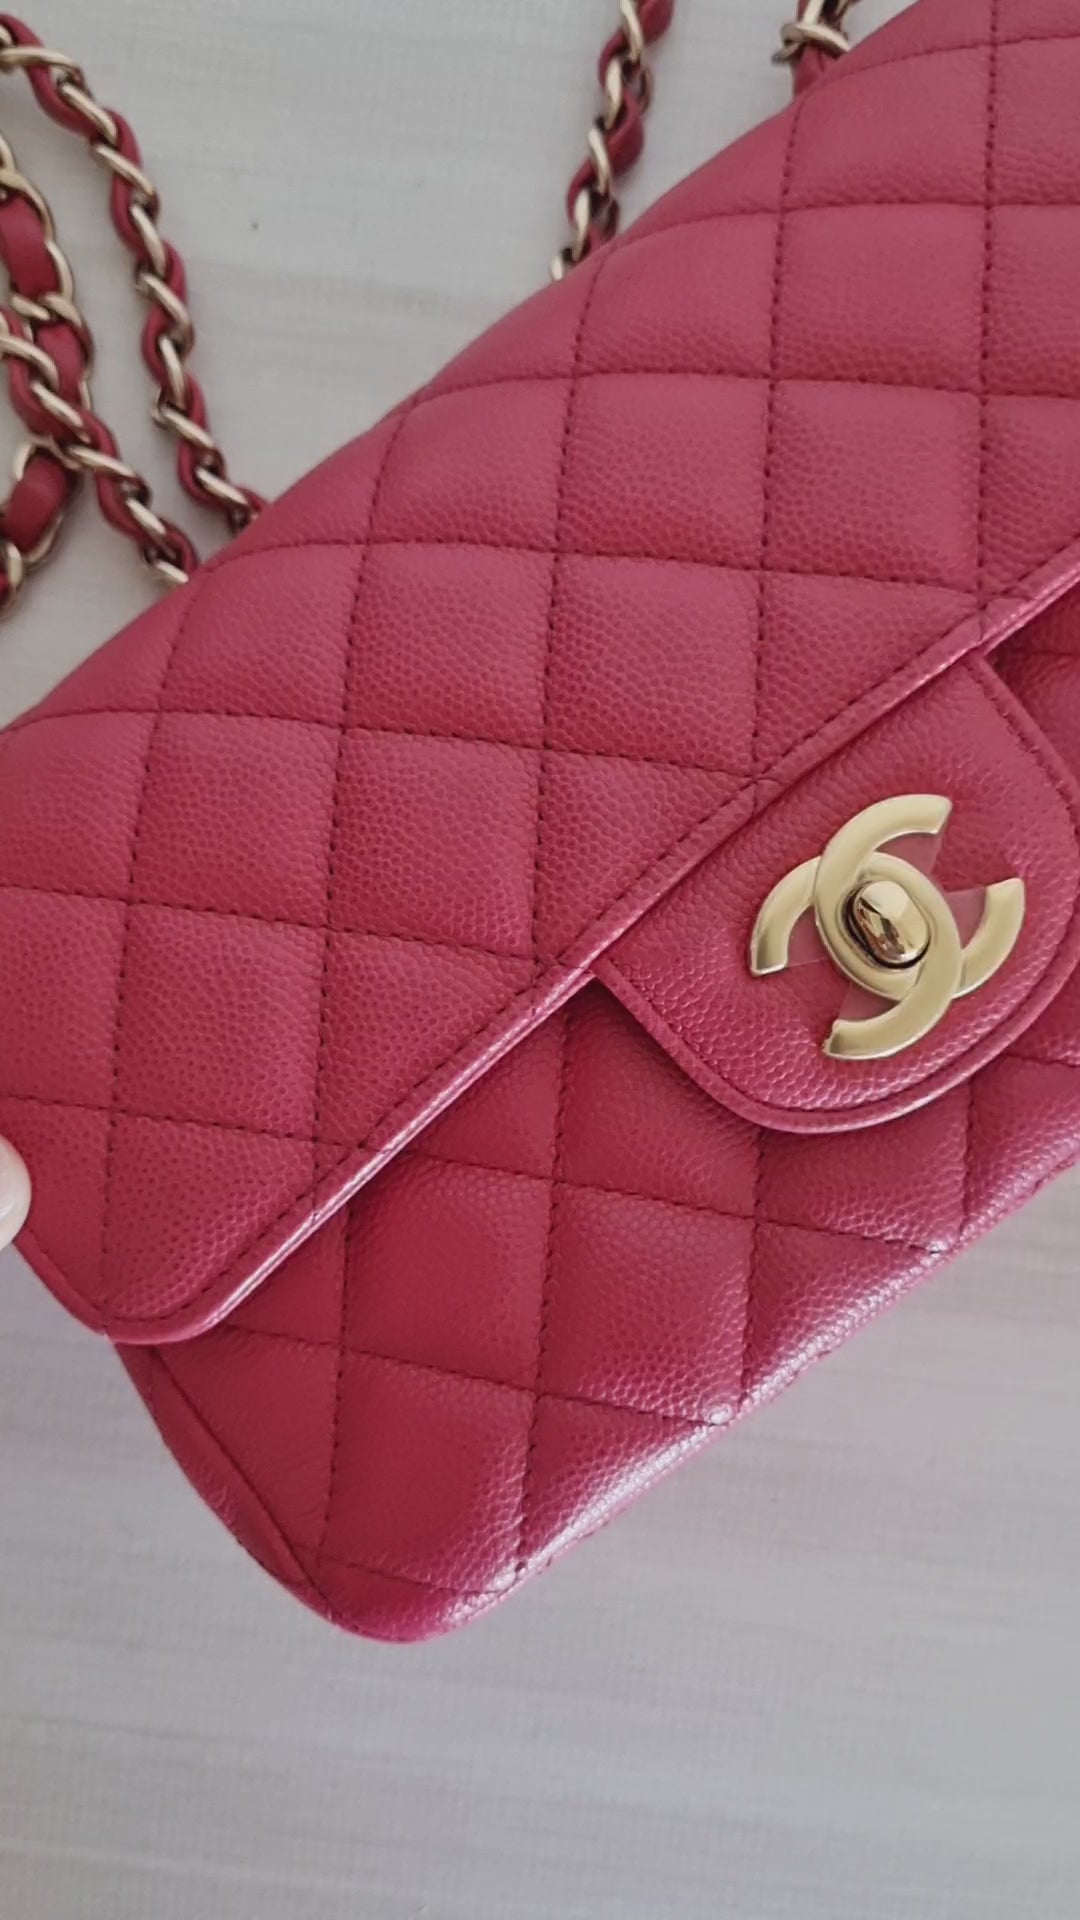 Classic Mini Square Flap Bag in 17C Pink Caviar